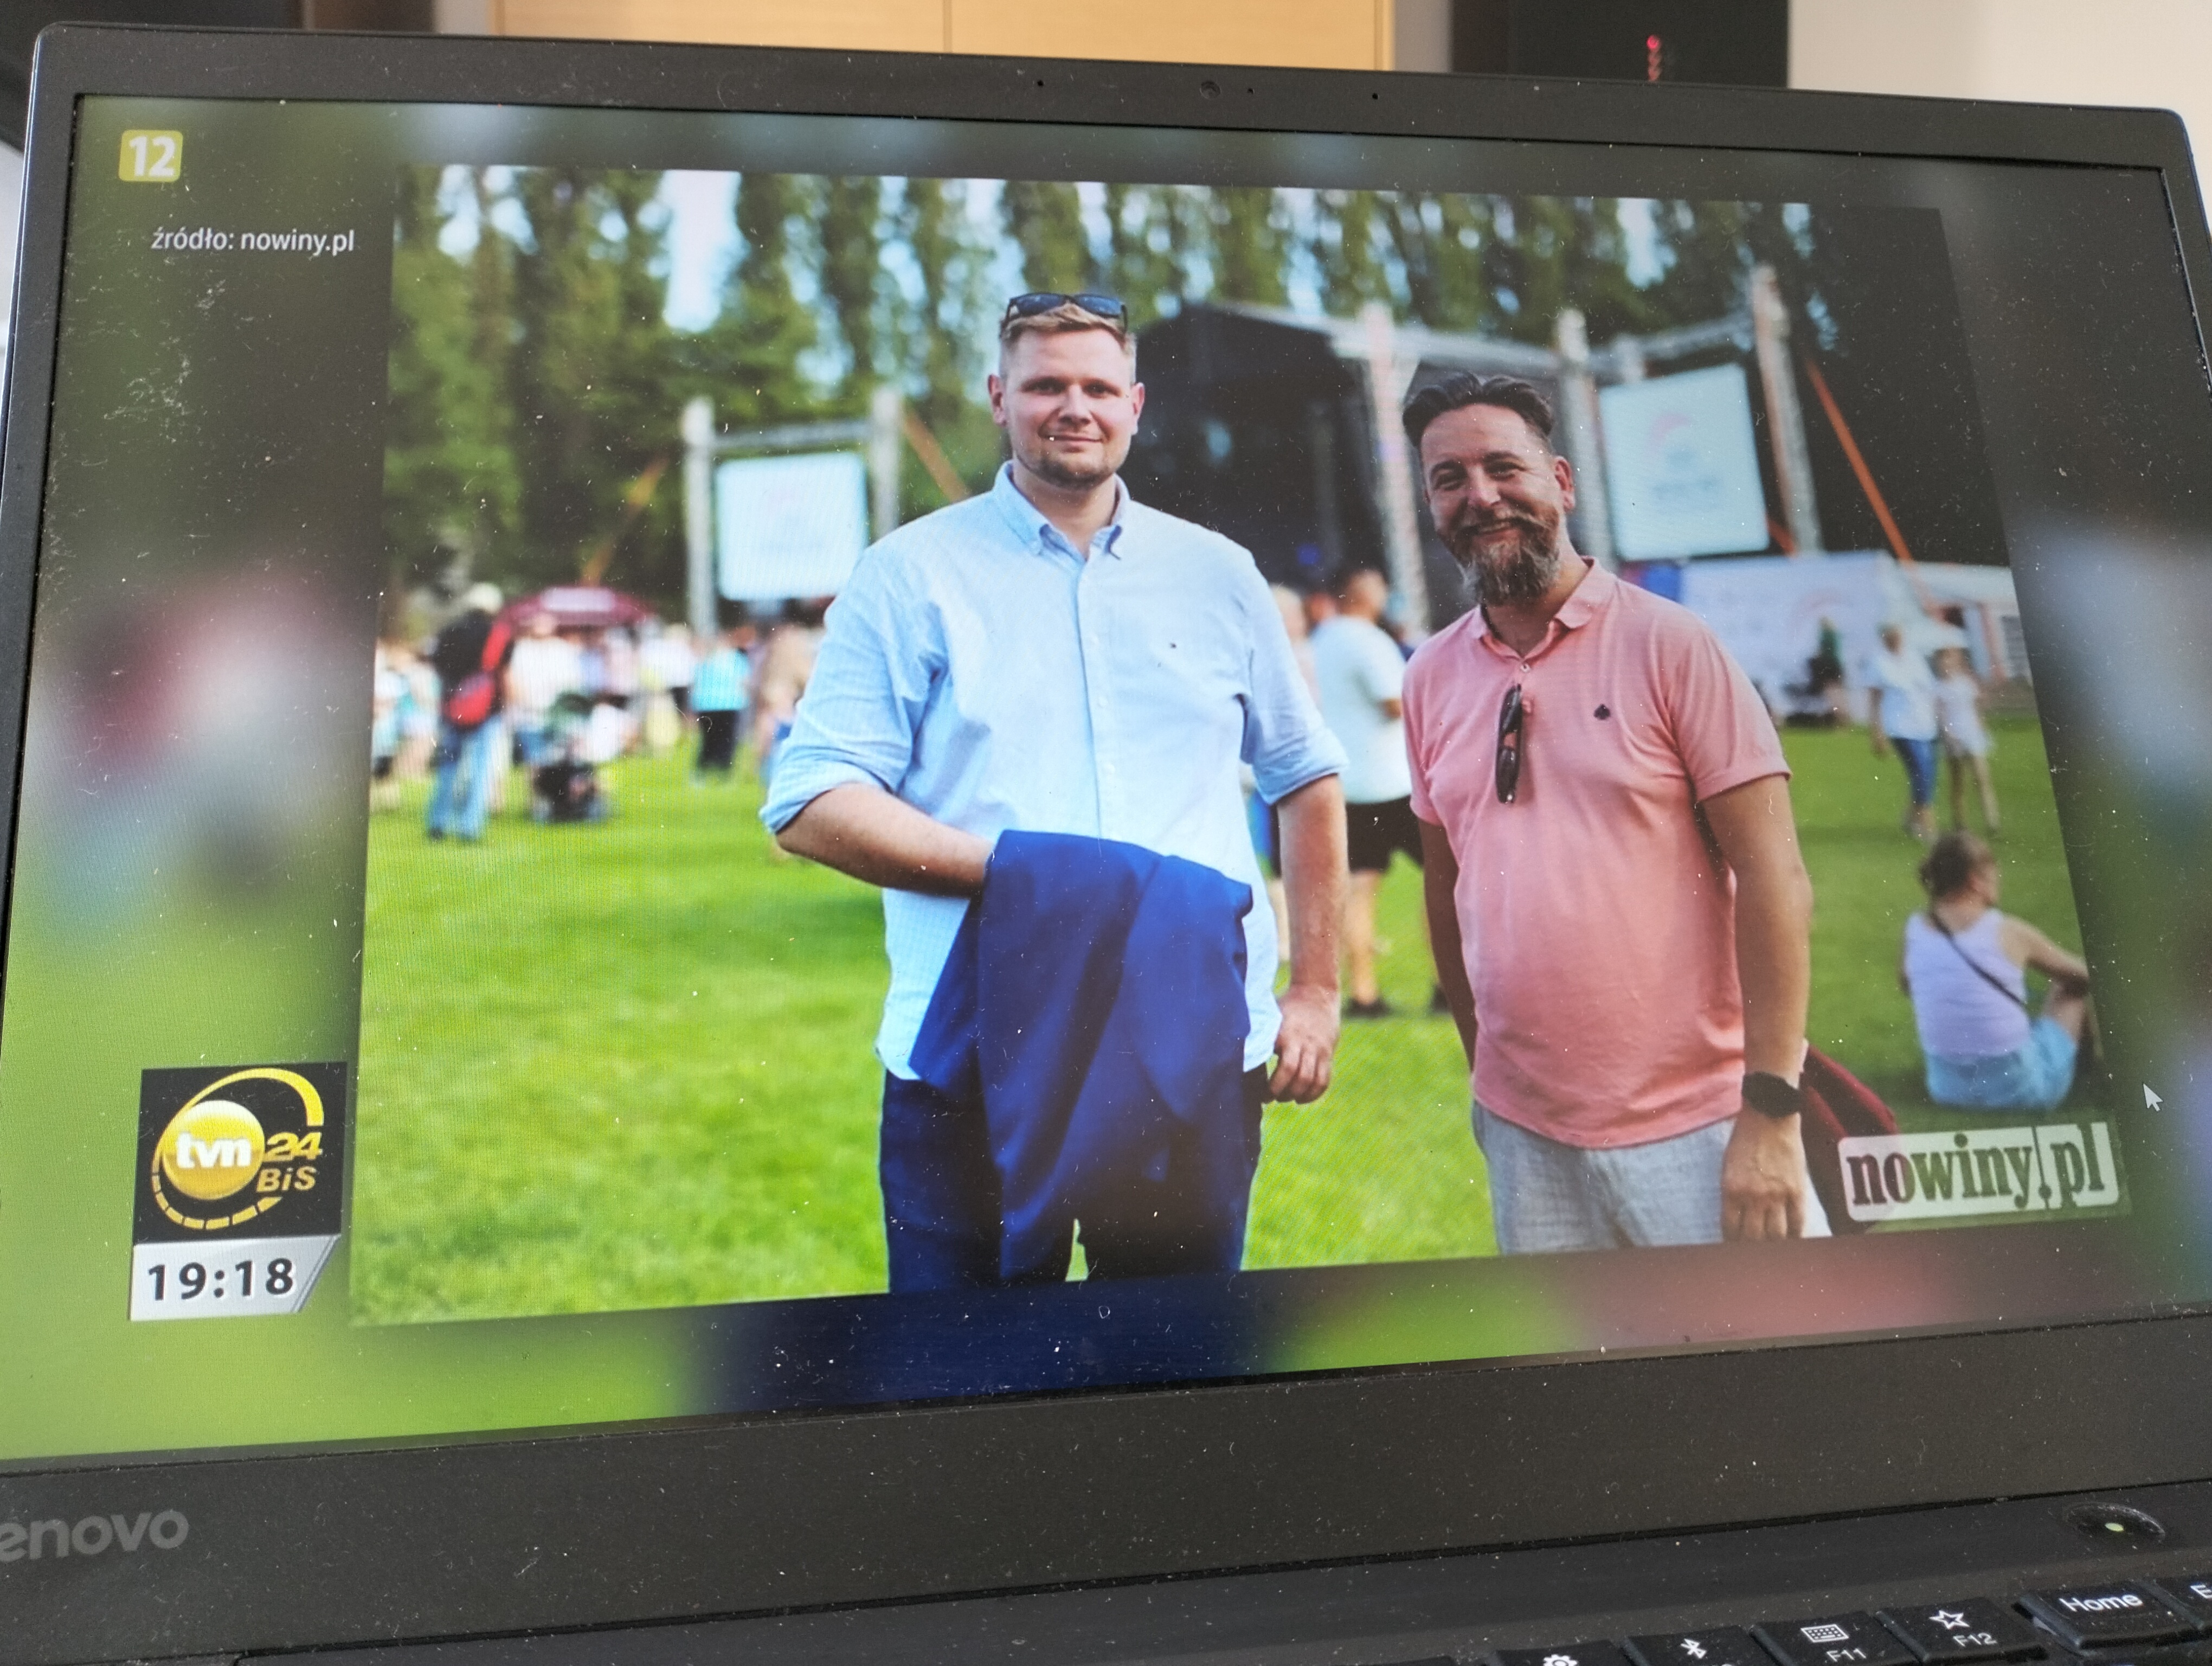 W głównym wydaniu Faktów TVN 22 lipca pokazywano zdjęcia z portalu Nowiny.pl z wydarzeń z udziałem posła Michała Wosia